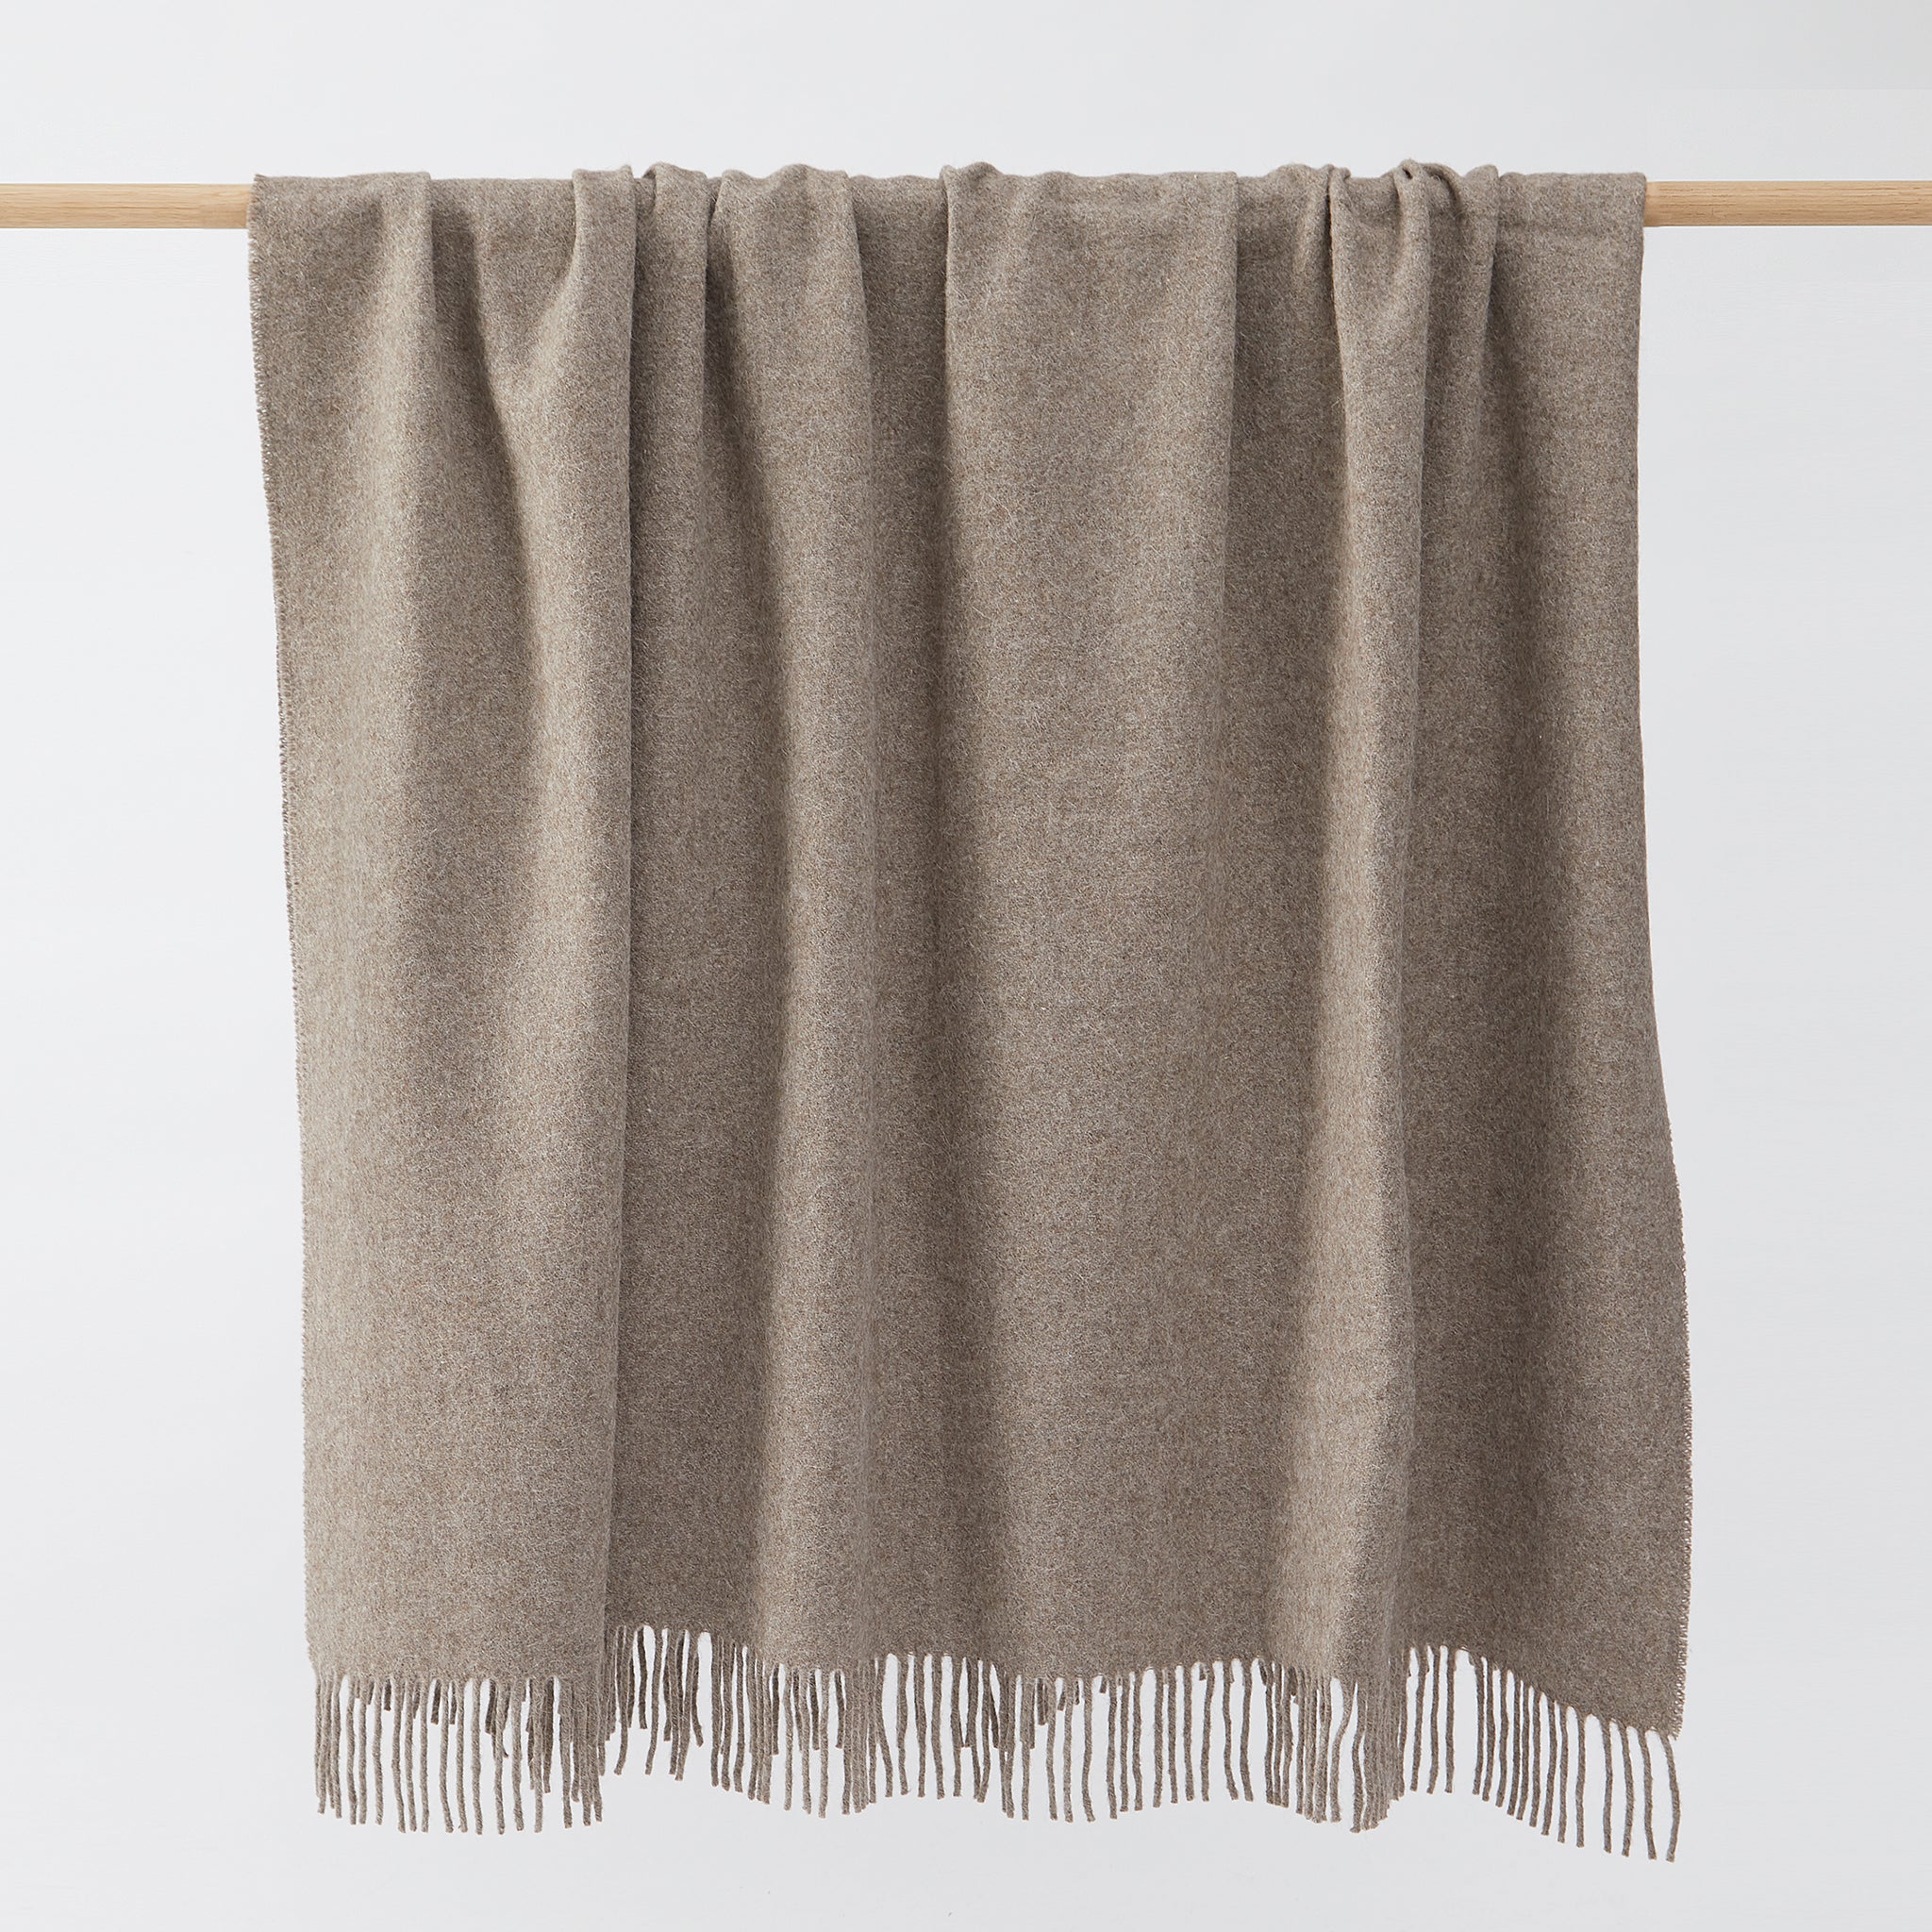 Superweich und warm: Eine hochwertige Lama Decke ist ein Stück fürs Leben. By Native